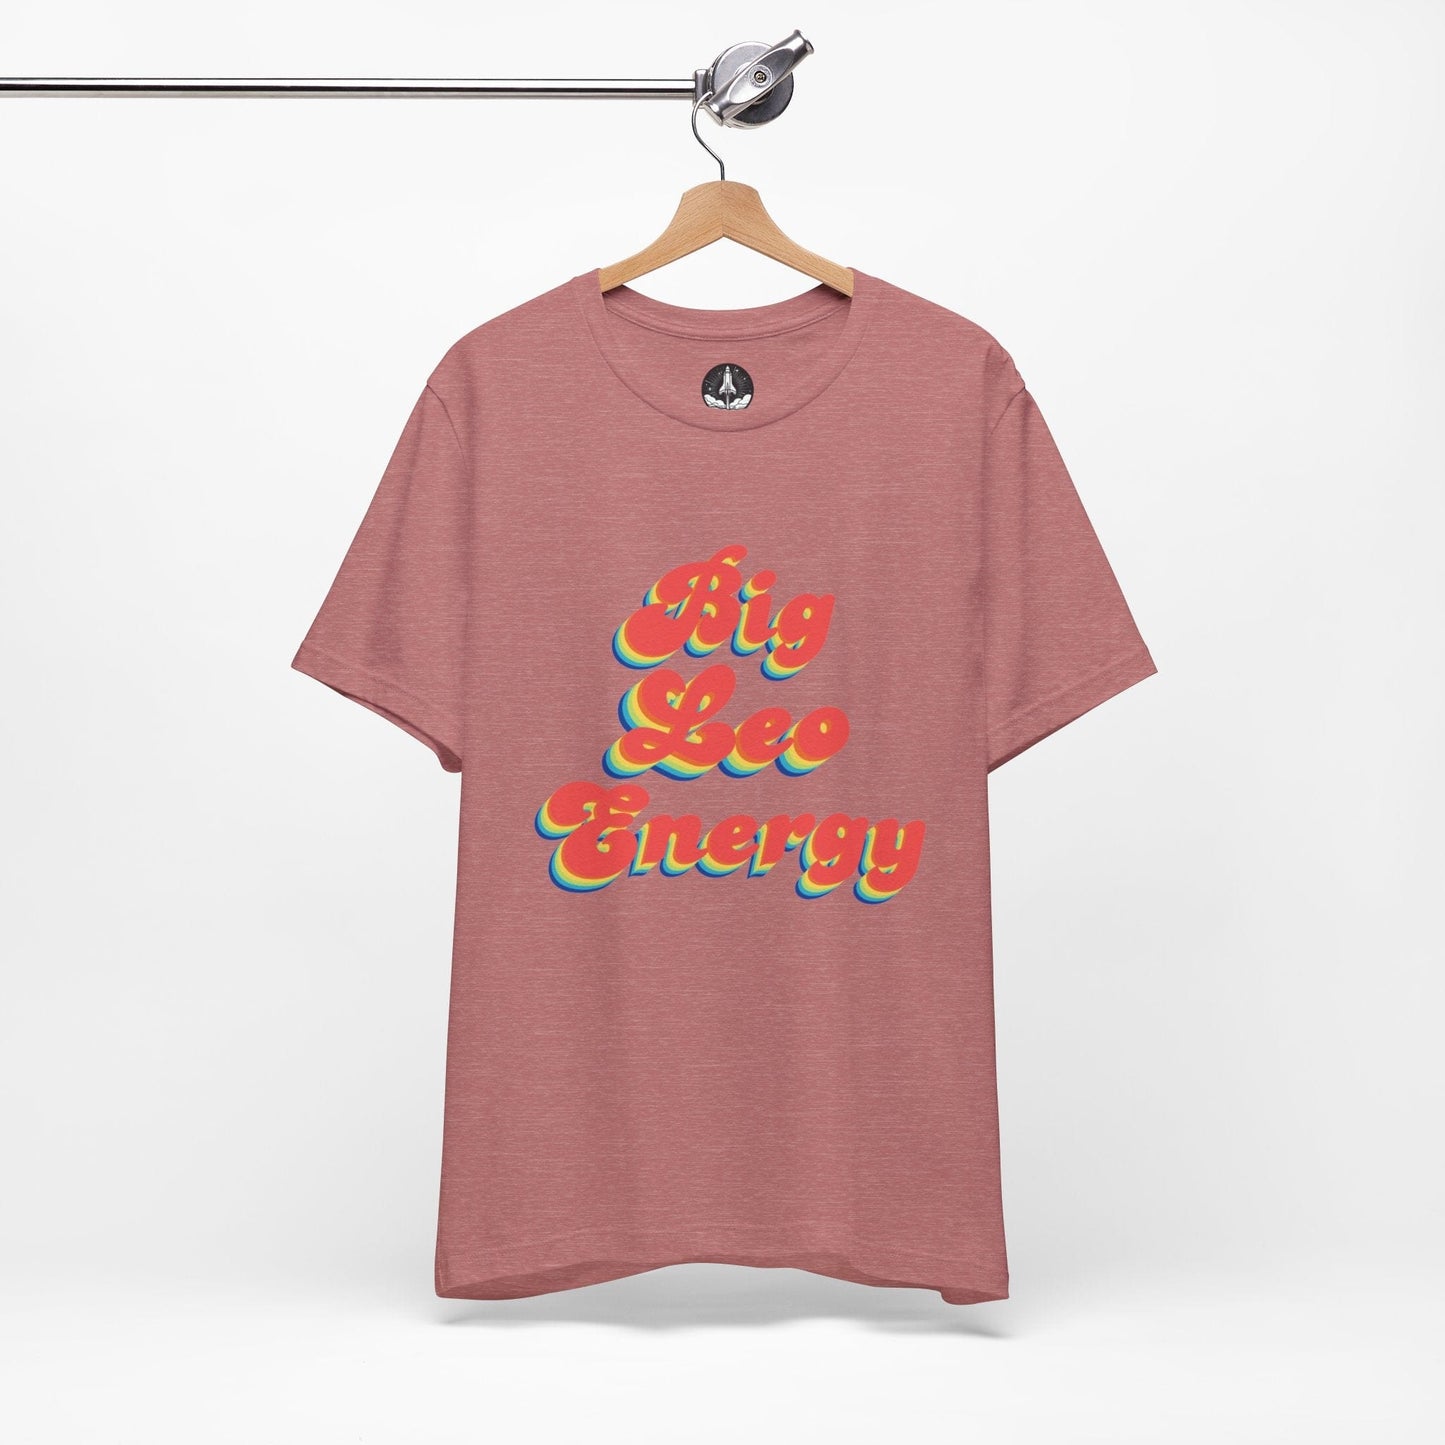 T-Shirt Big Leo Energy T-Shirt